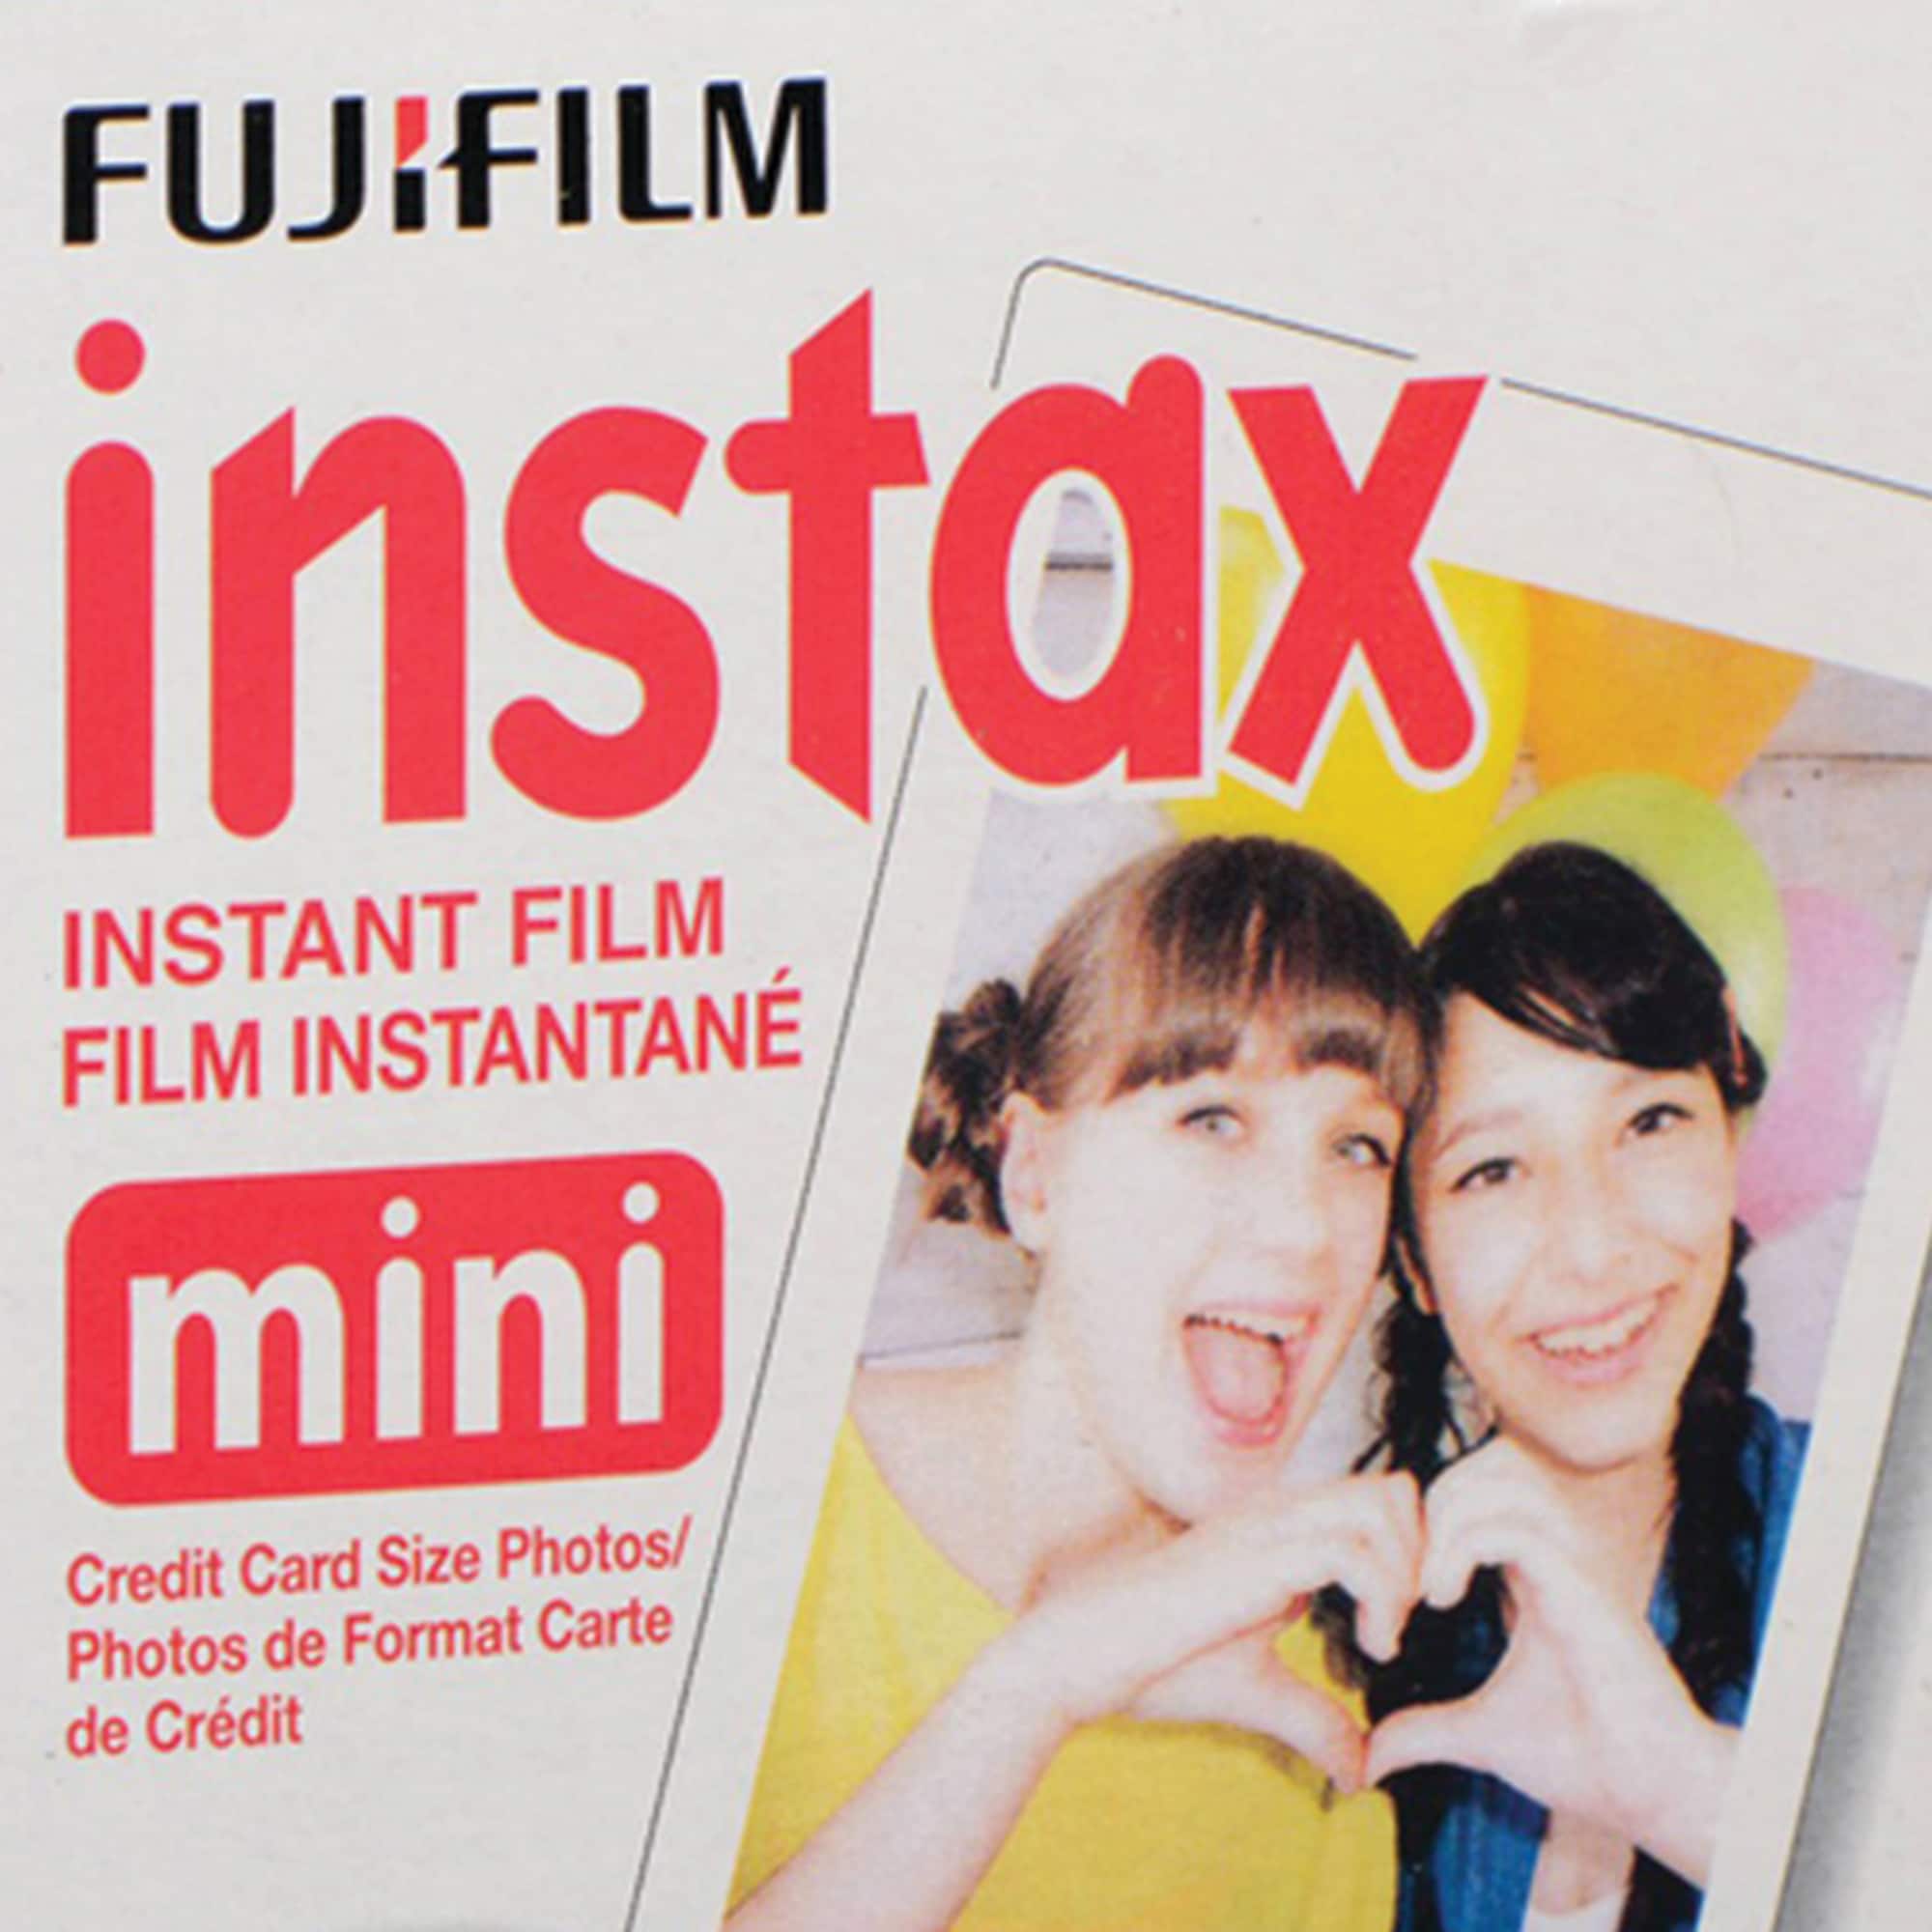 Fujifilm Instax Instant Film Michaels